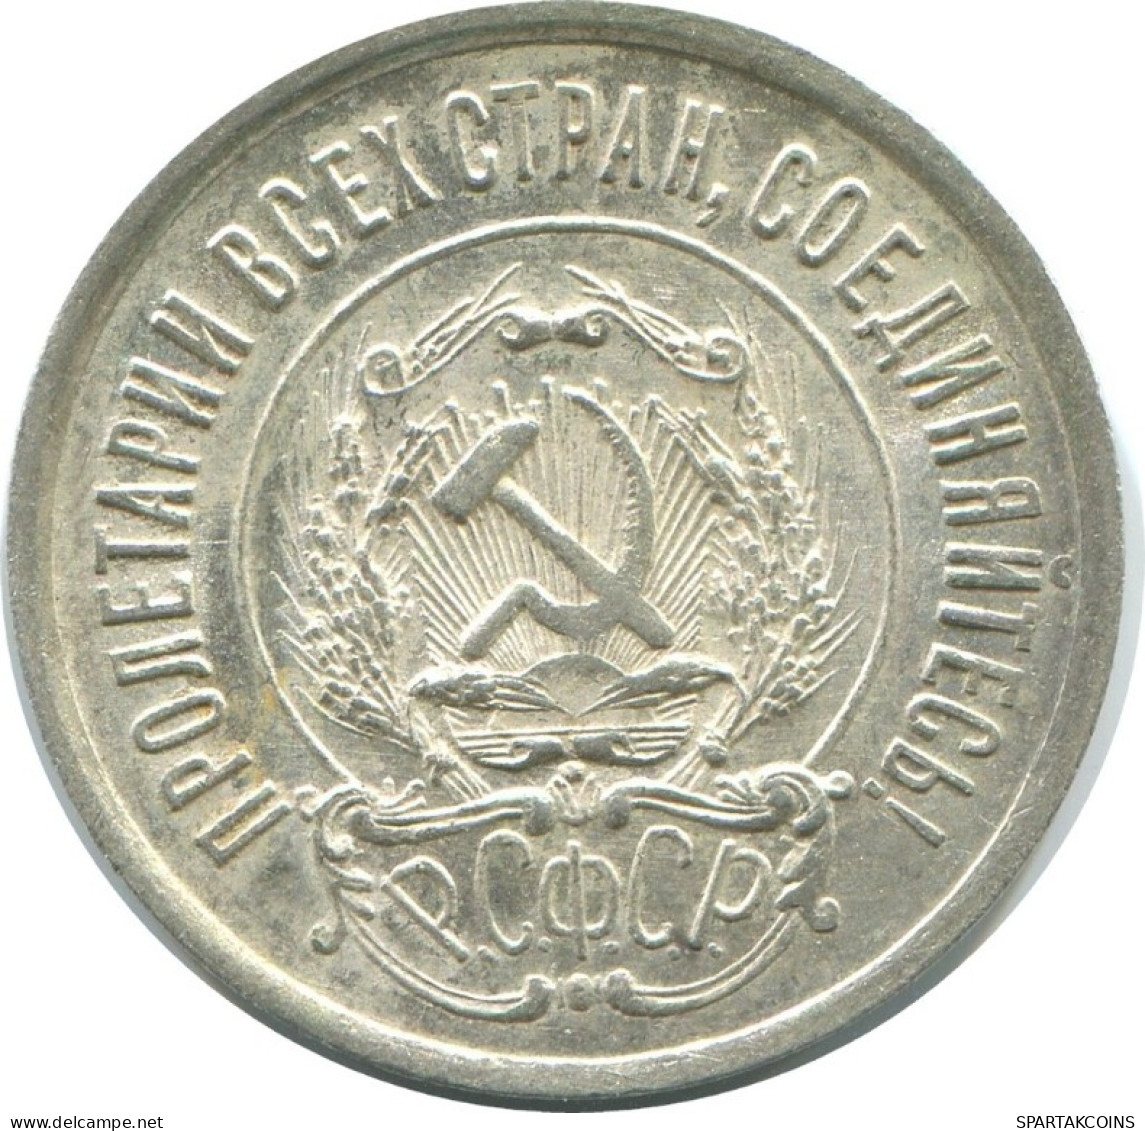 20 KOPEKS 1923 RUSSLAND RUSSIA RSFSR SILBER Münze HIGH GRADE #AF627.D.A - Russia